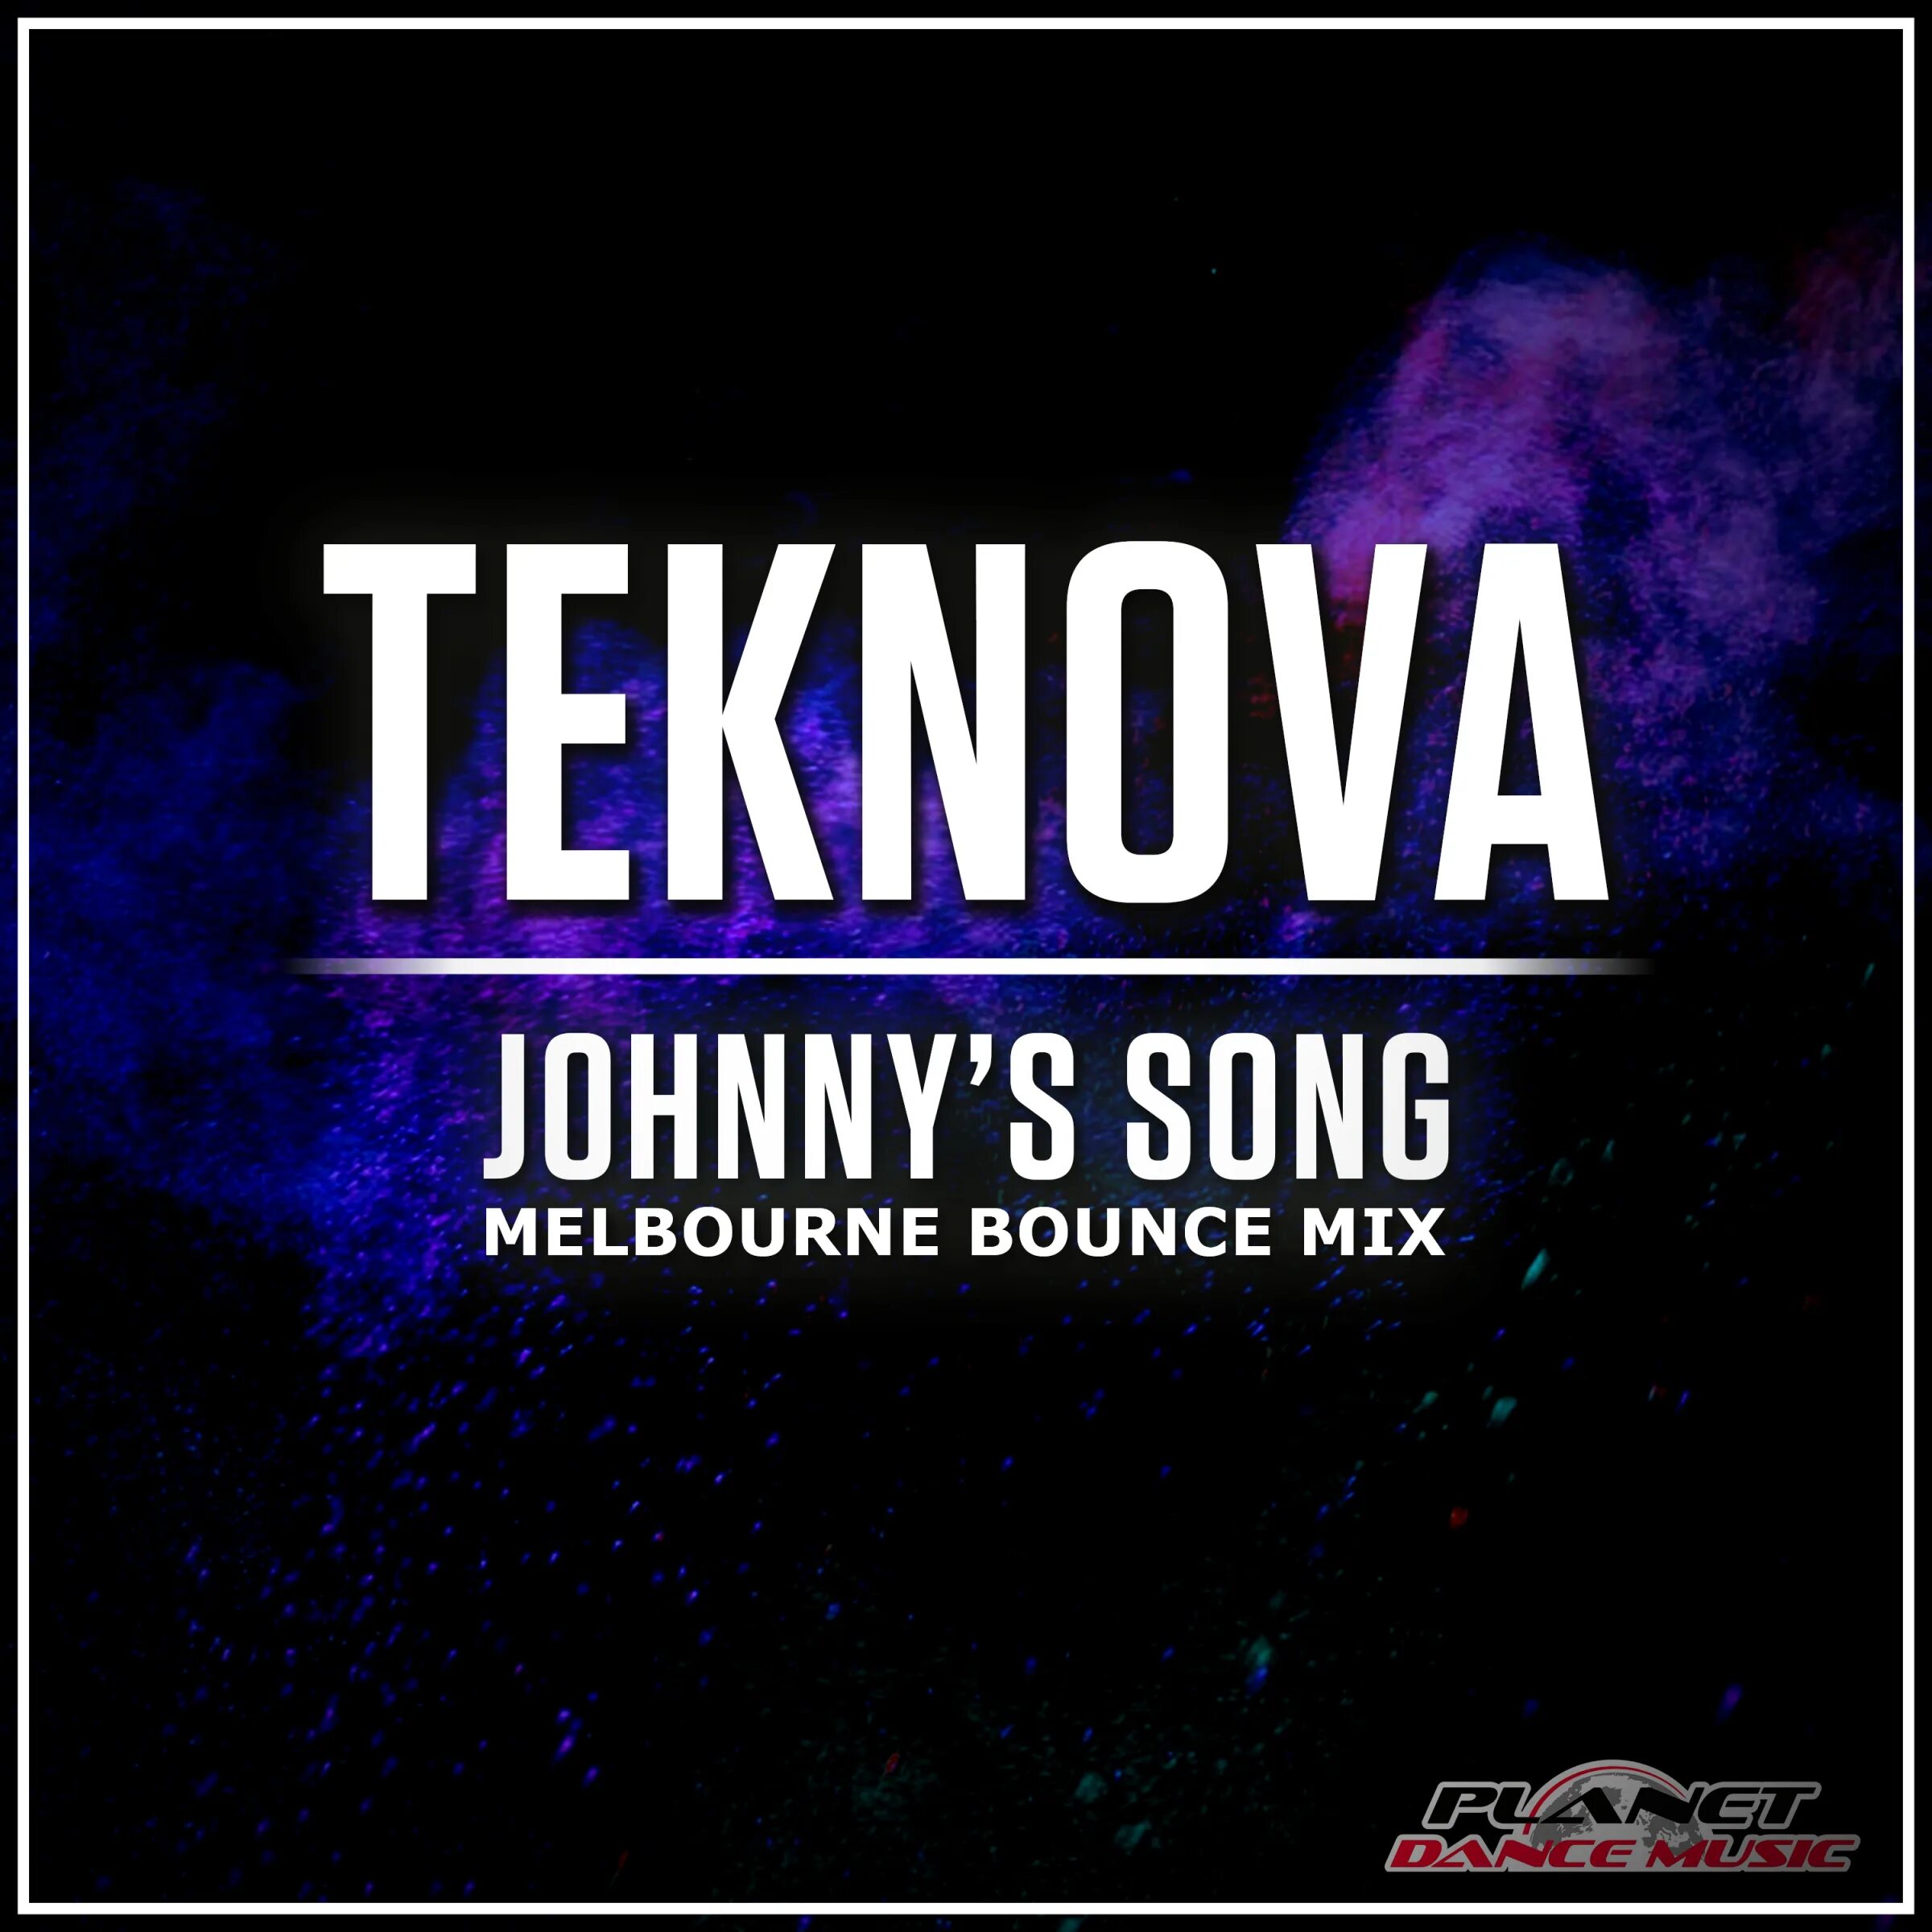 Bounce mix. Melbourne Bounce Mix. Teknova. Teknova-Johnnys-Song. Teknova исполнитель.